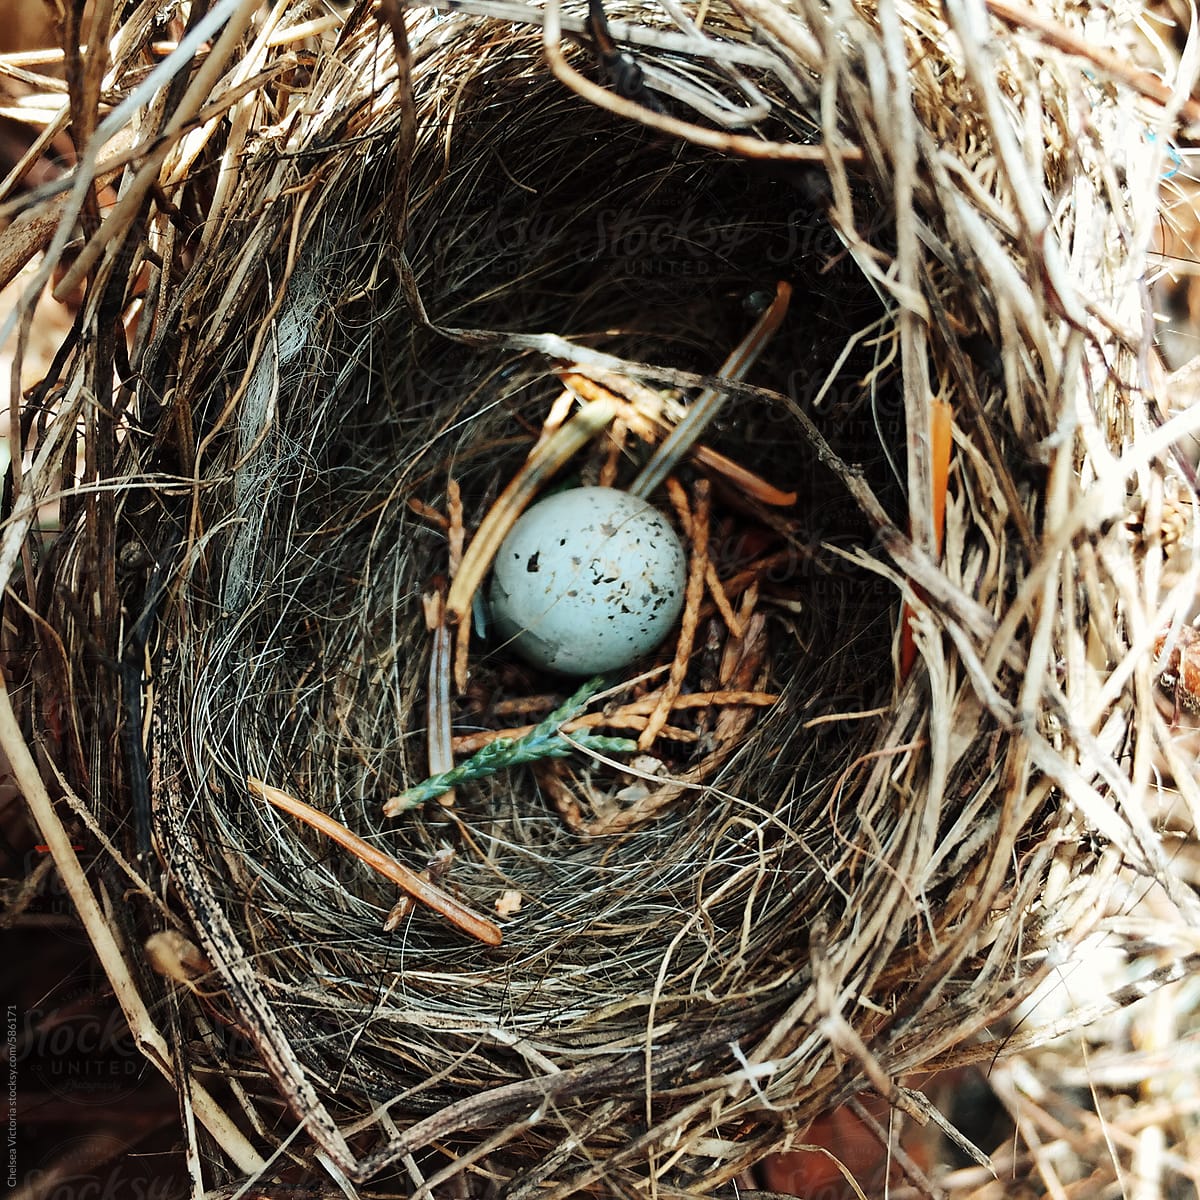 A birds nest with a robins egg